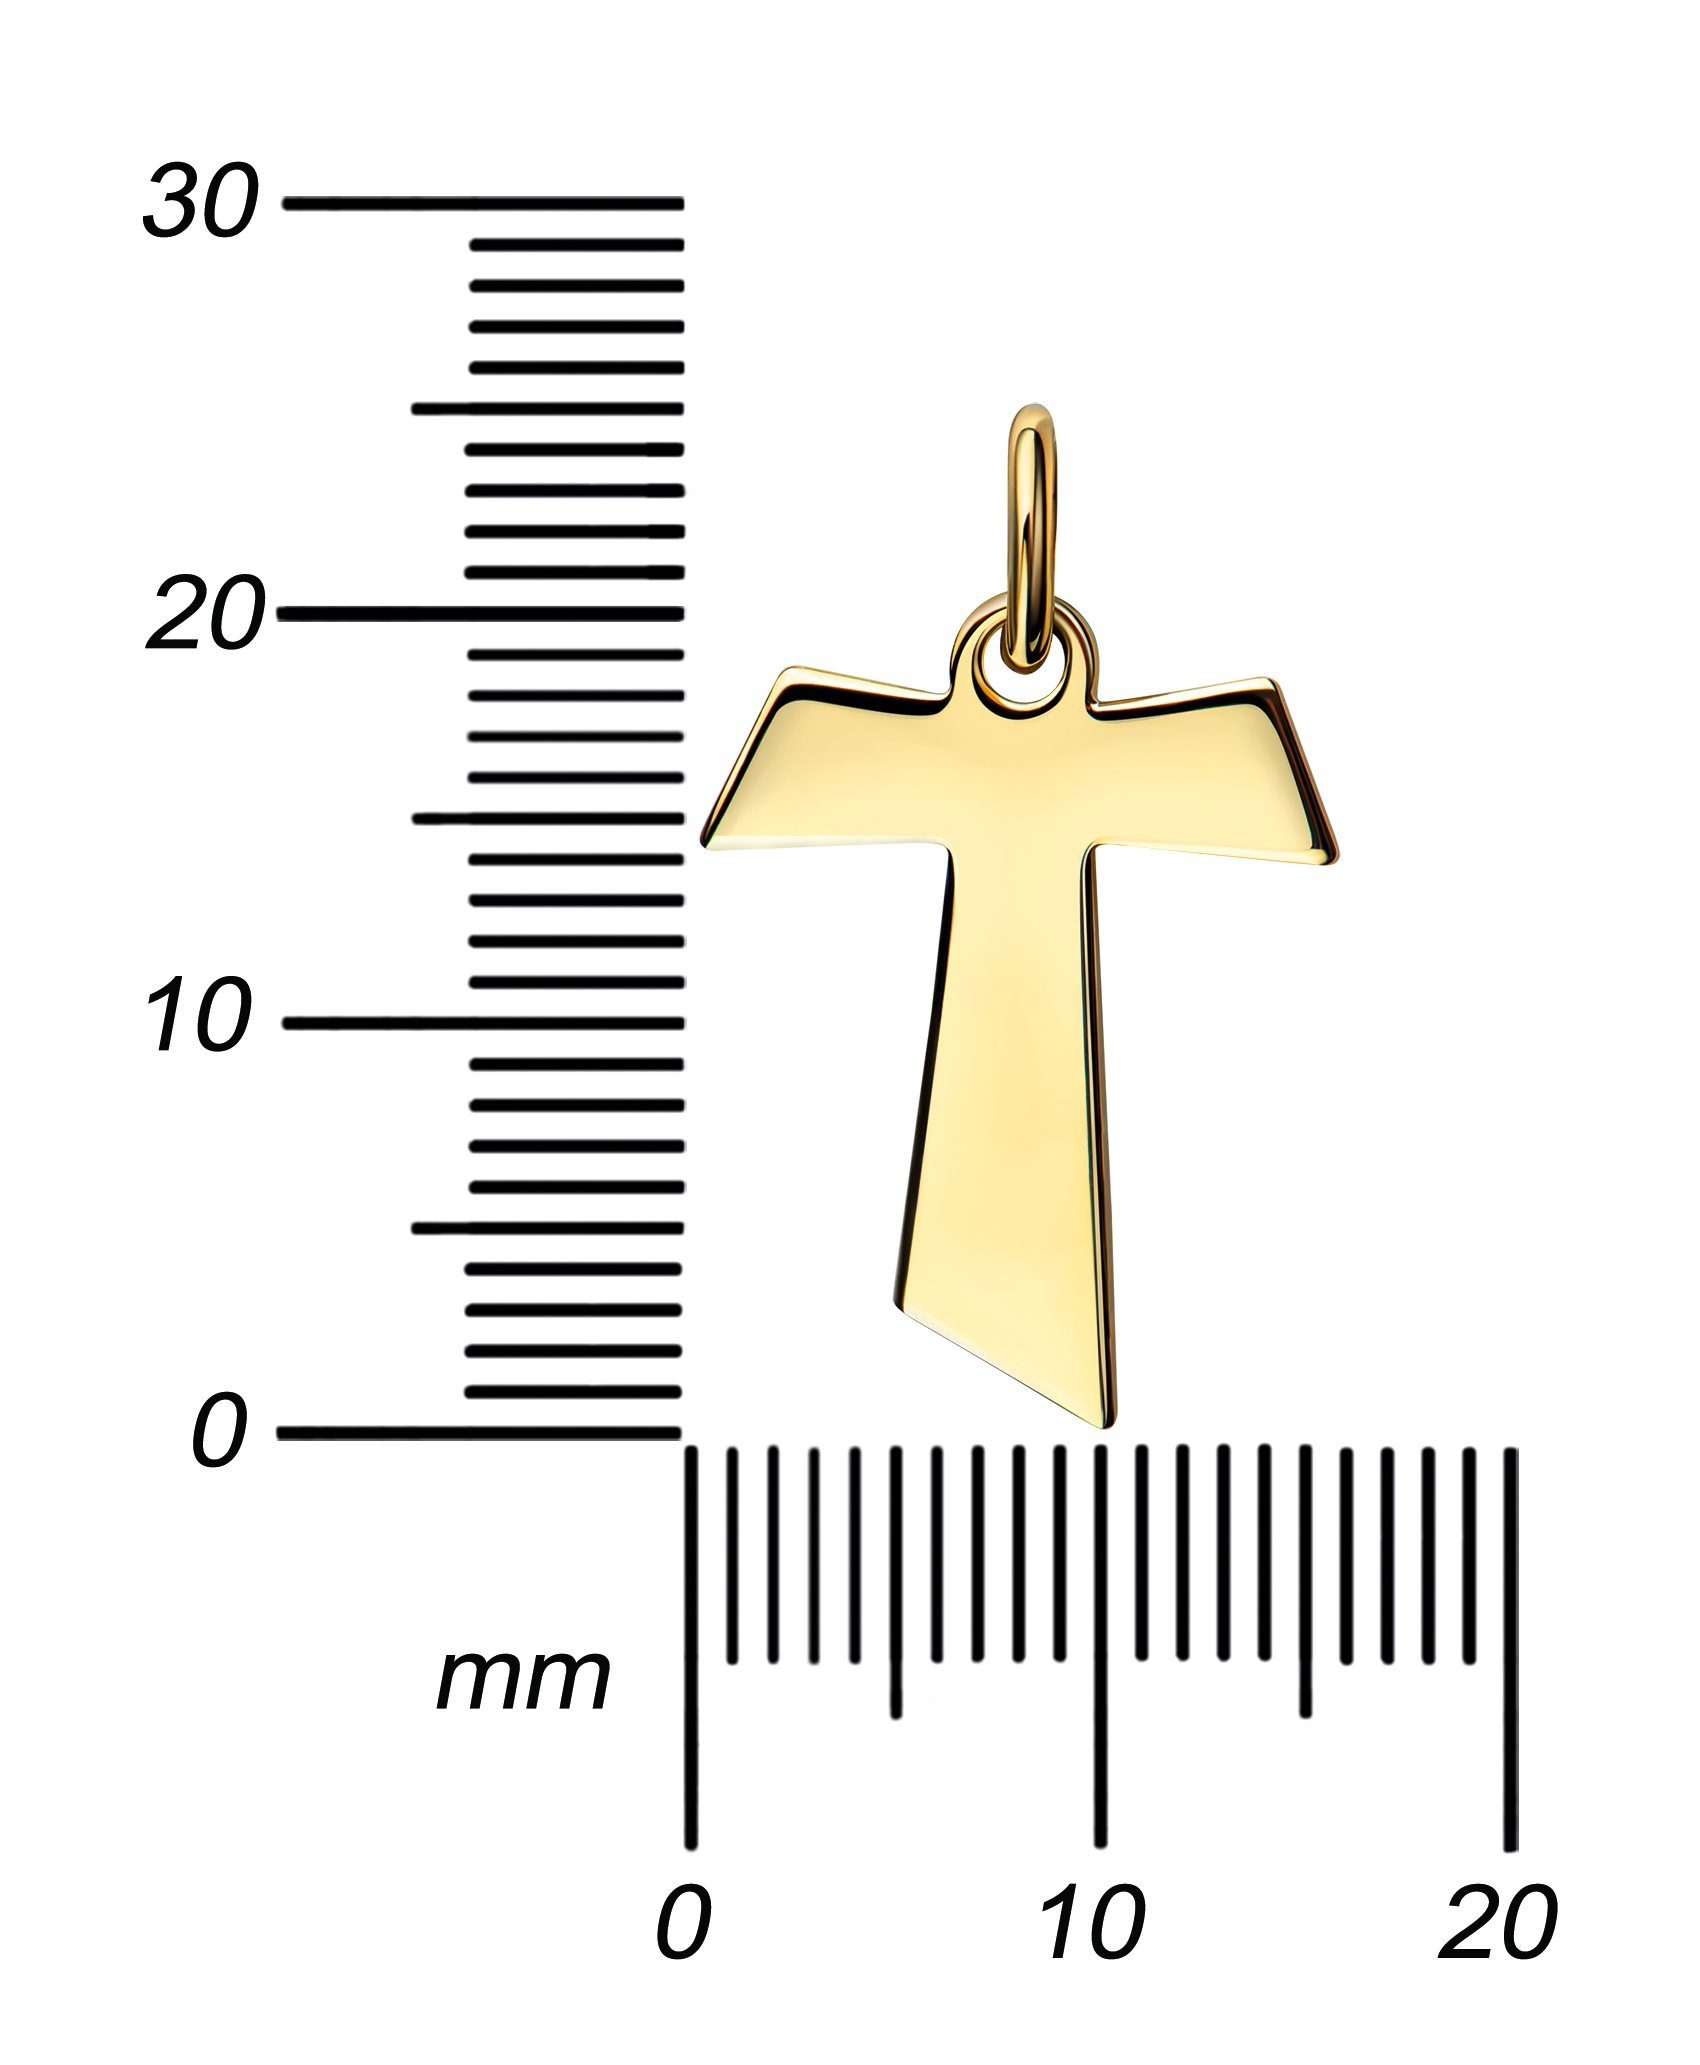 JEVELION Kreuzanhänger Antoniuskreuz 585 - Germany und Made in Damen Gold für Herren), (Goldkreuz, Kettenanhänger